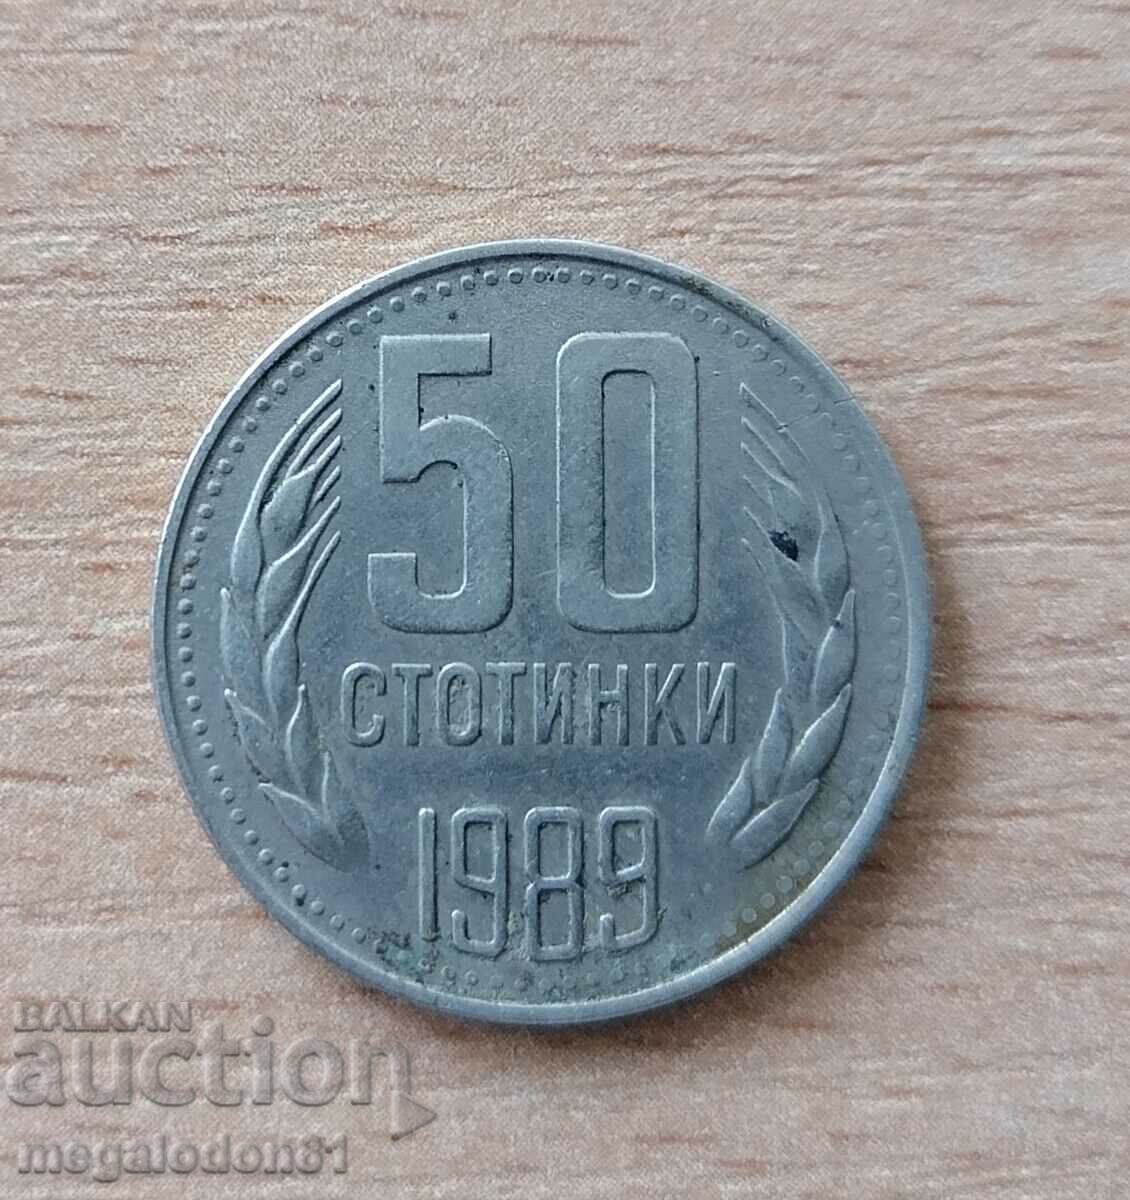 Βουλγαρία - 50 σεντς 1989, λεία μπάντα